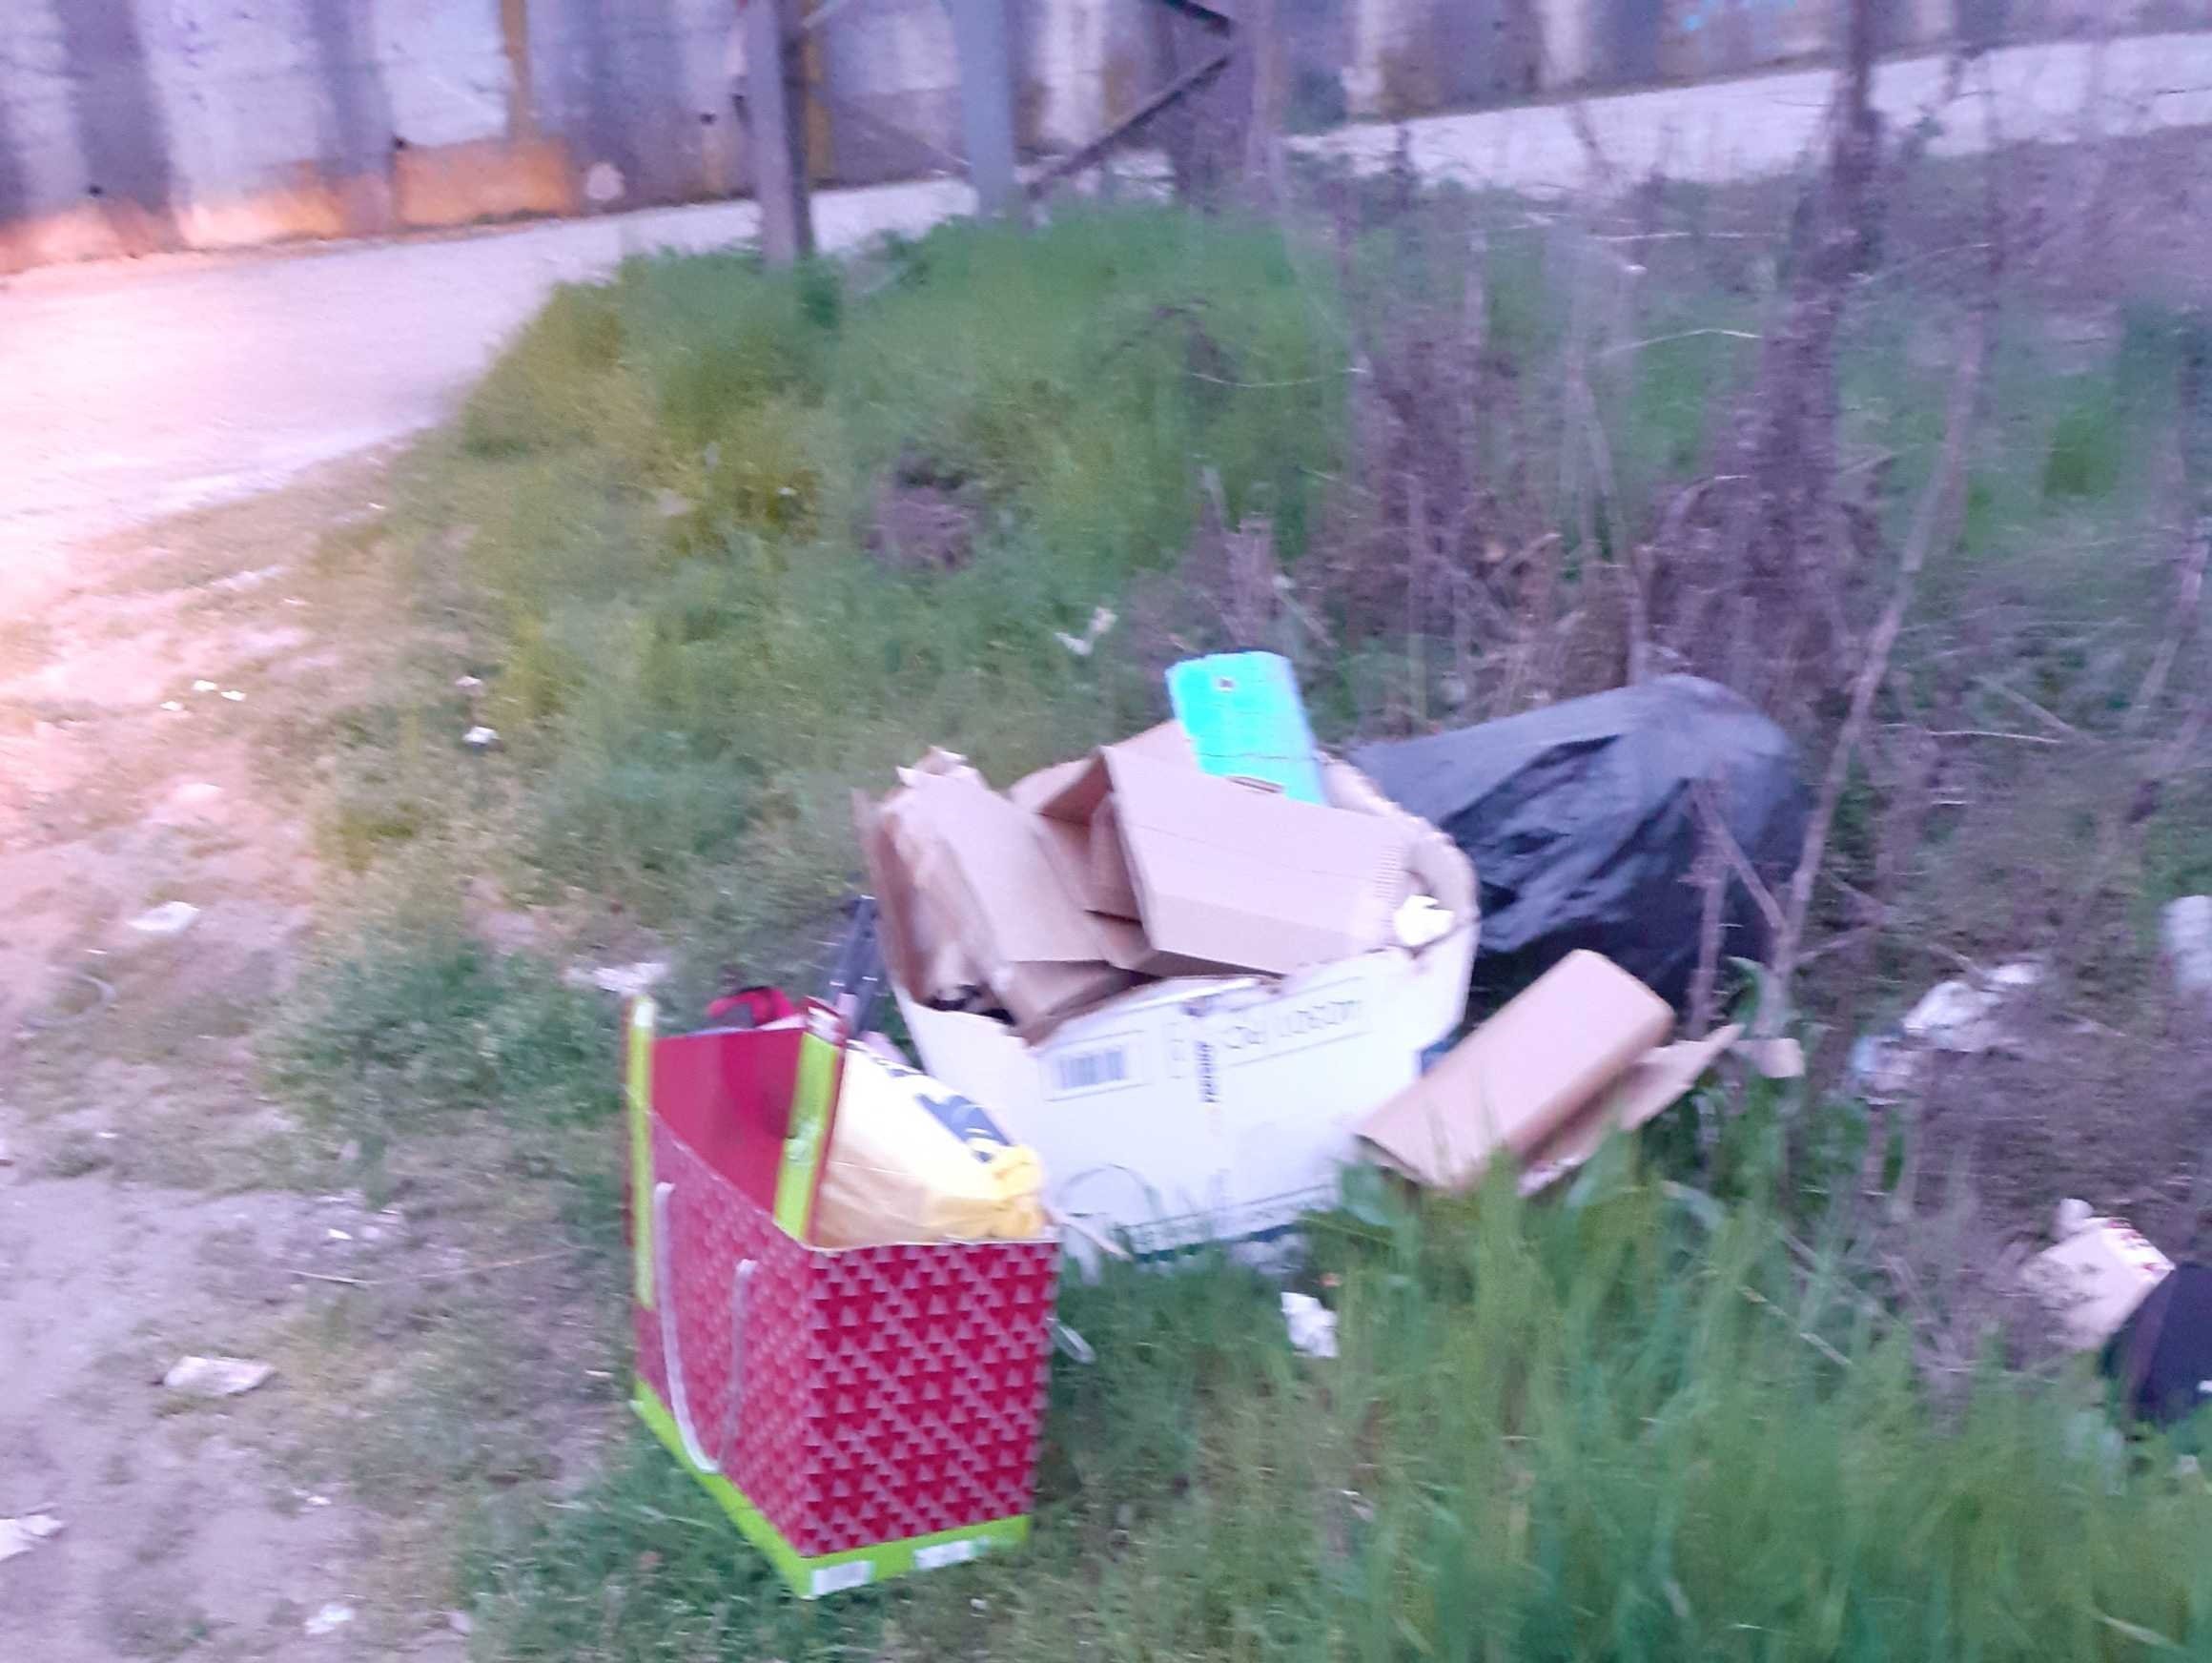 Abbandona sacchi della spazzatura in strada a Novi ma dentro c’erano documenti con i suoi dati: multato